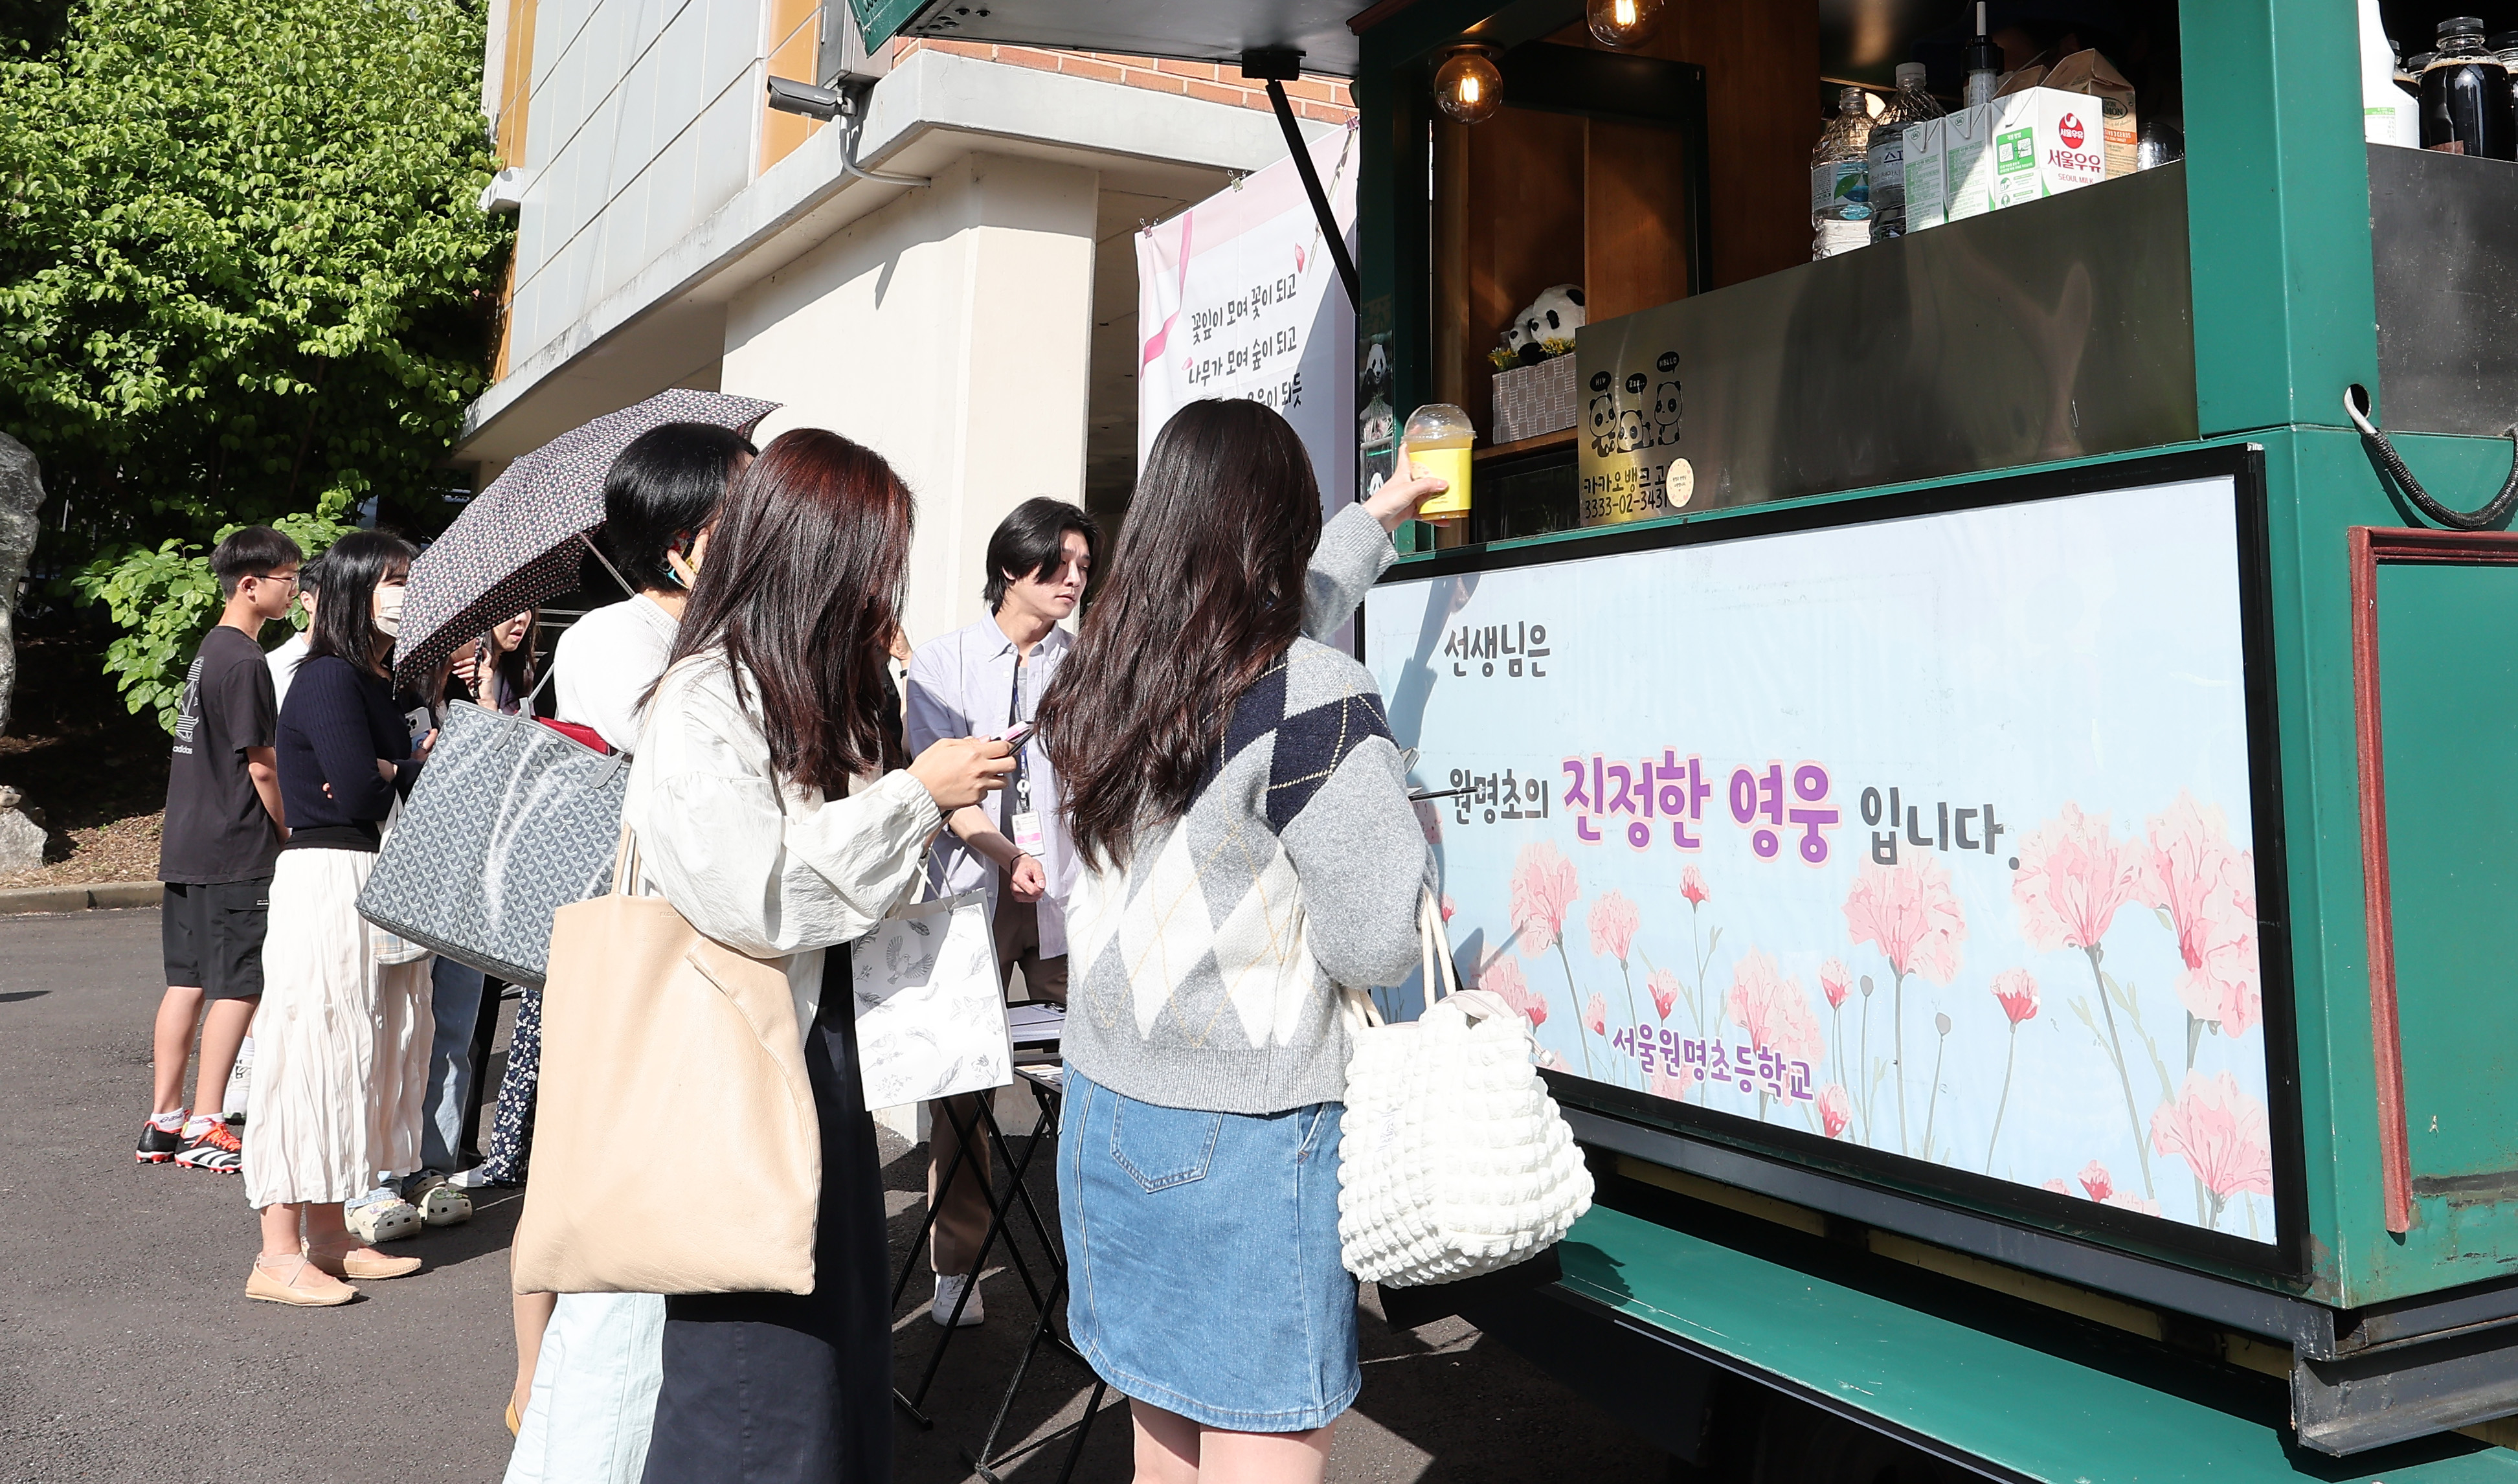 스승의날을 하루 앞둔 14일 전국 학교 곳곳에서 자체적으로 마련한 행사가 이어졌다. 서울 서초구 원명초등학교에는 교사들을 위한 커피차가 들어섰다. 뉴스1